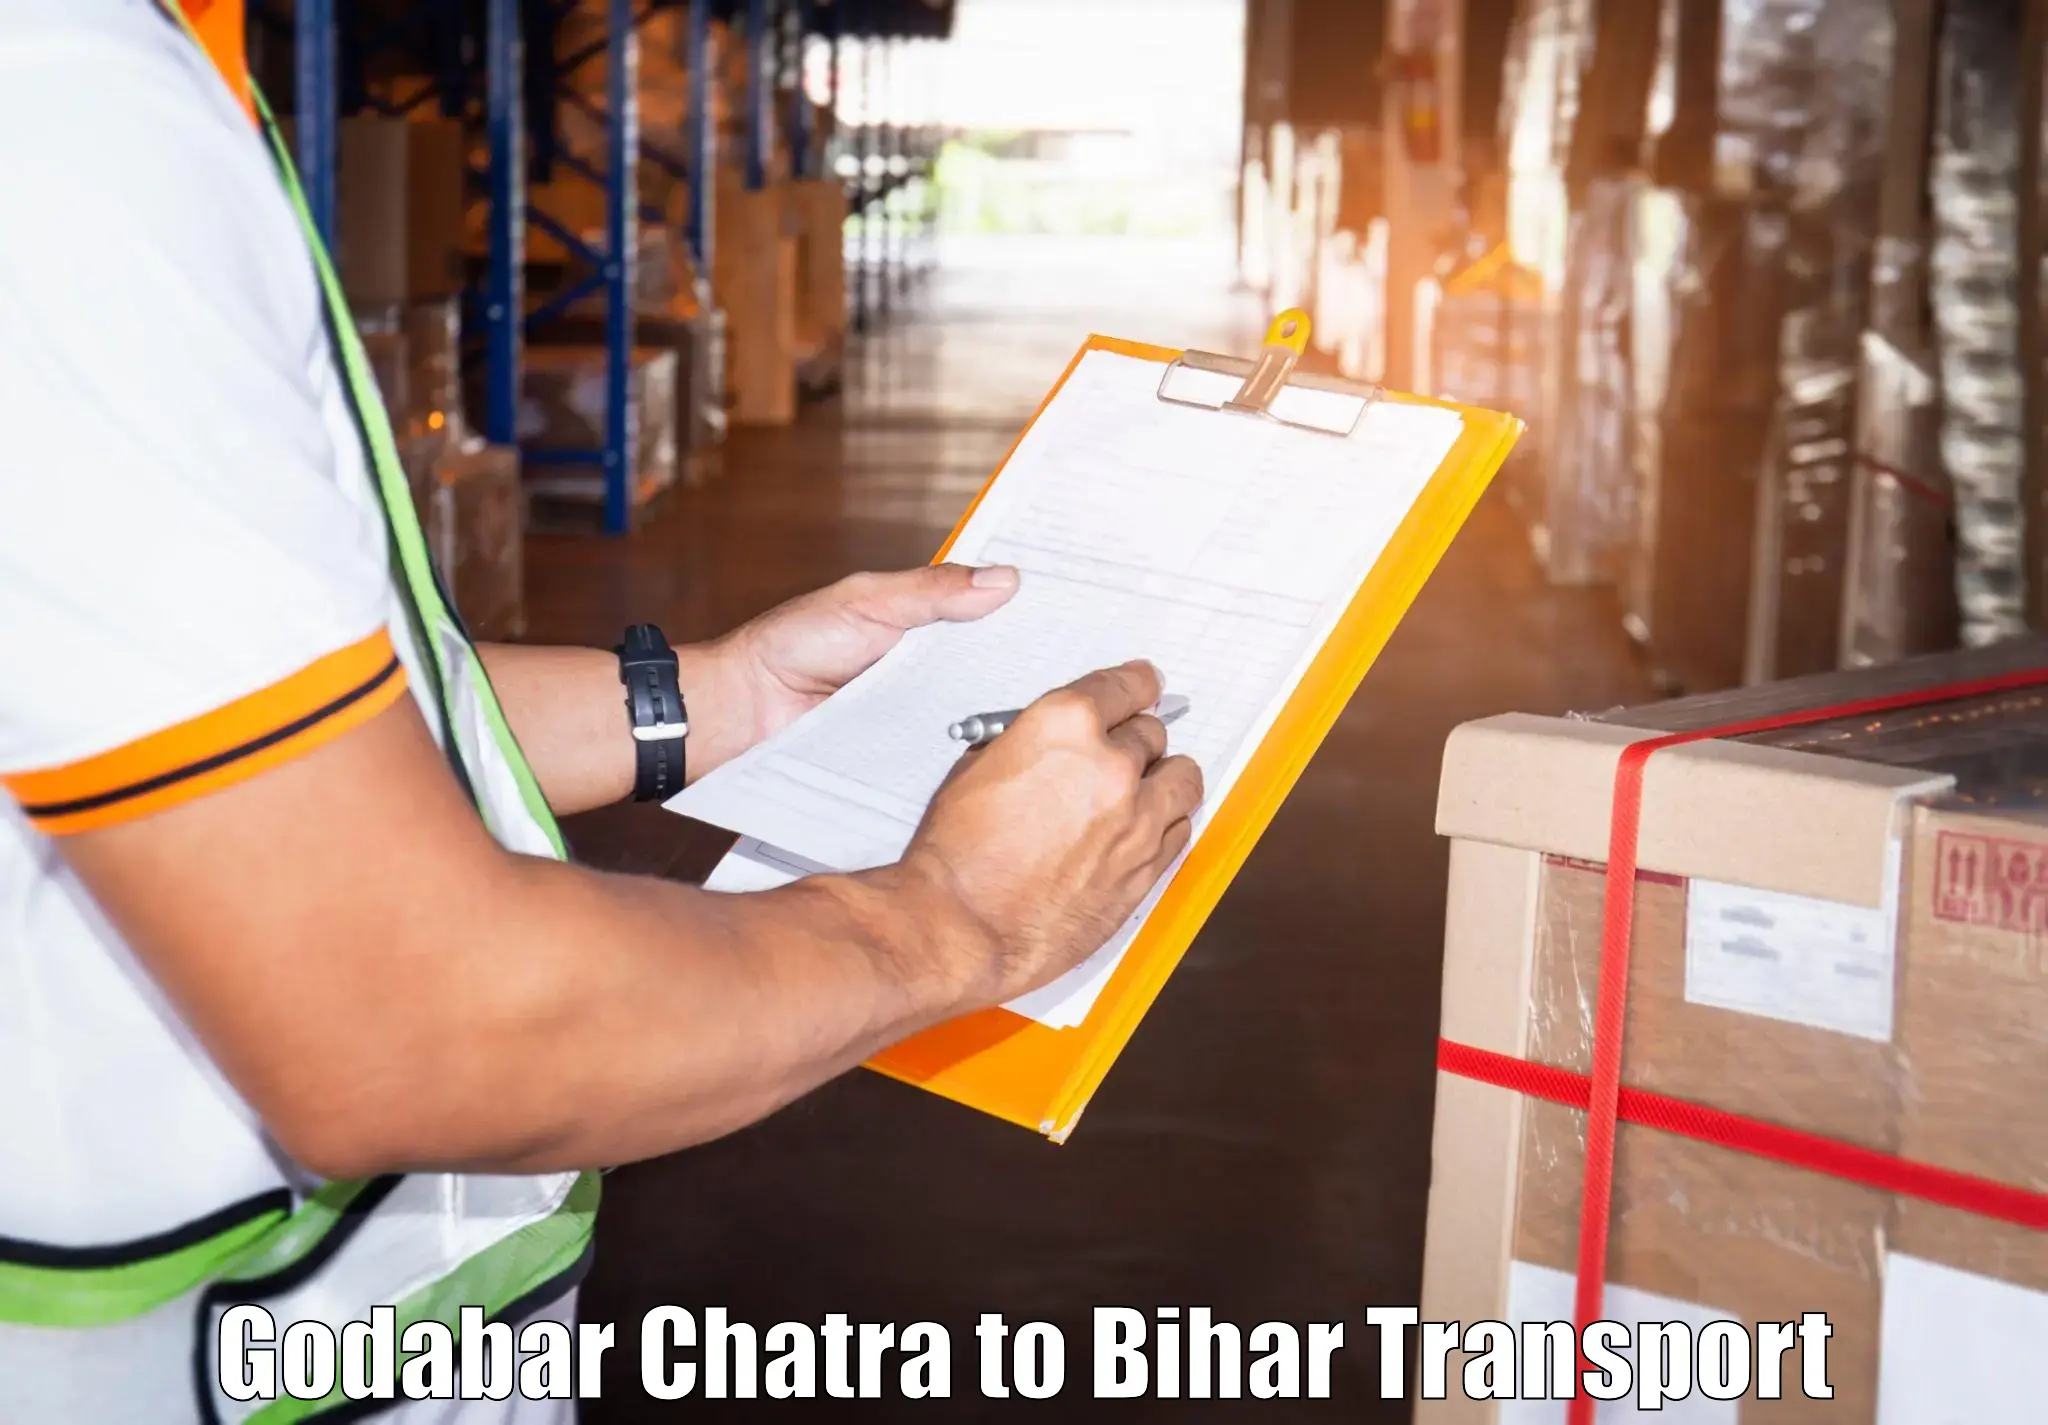 Shipping partner Godabar Chatra to Biraul